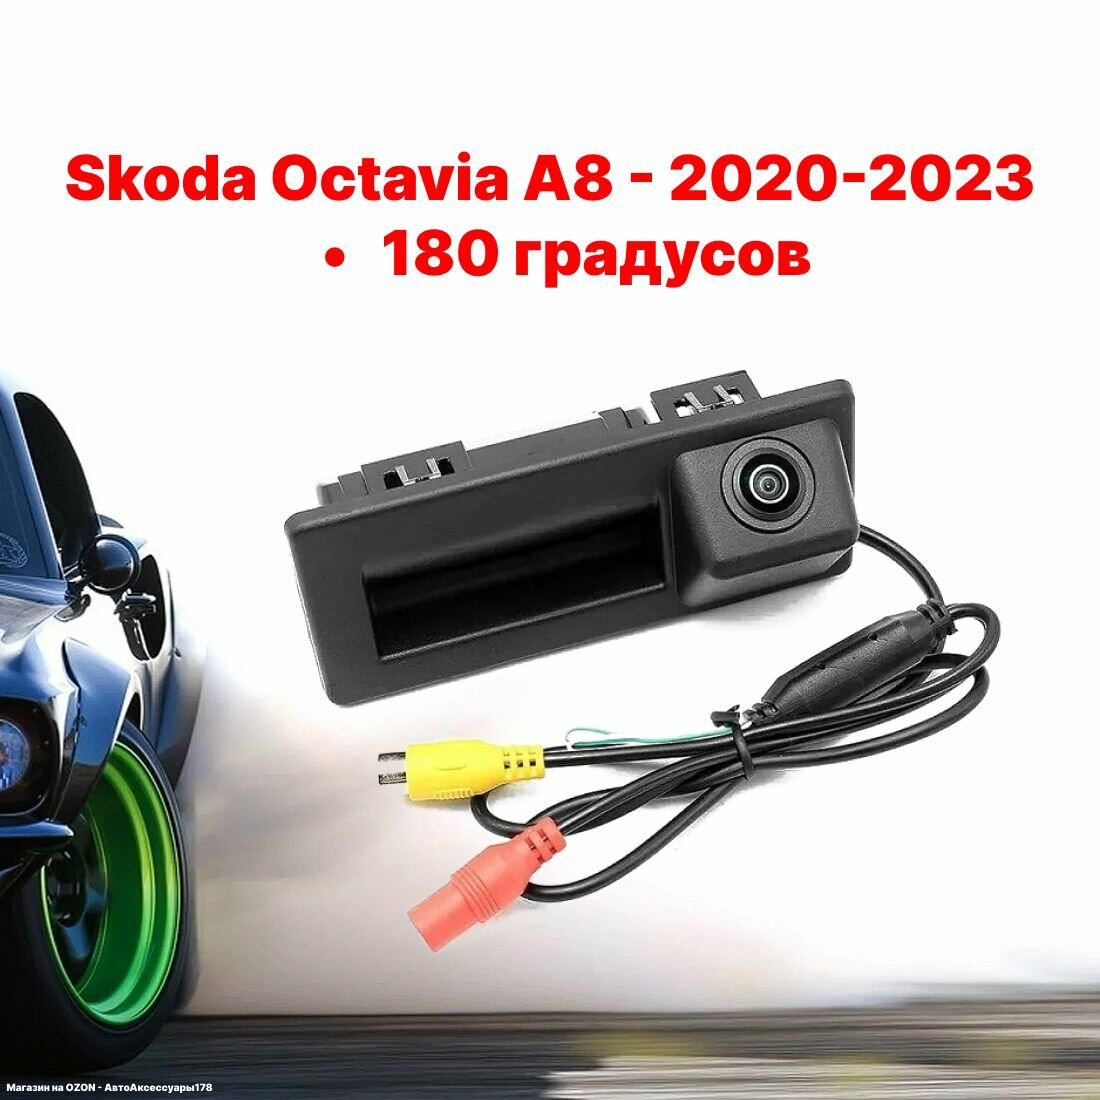 Камера заднего вида в ручку багажника Шкода Октавия А8 - 180 градусов (Skoda Octavia А8 - 2020-2023)